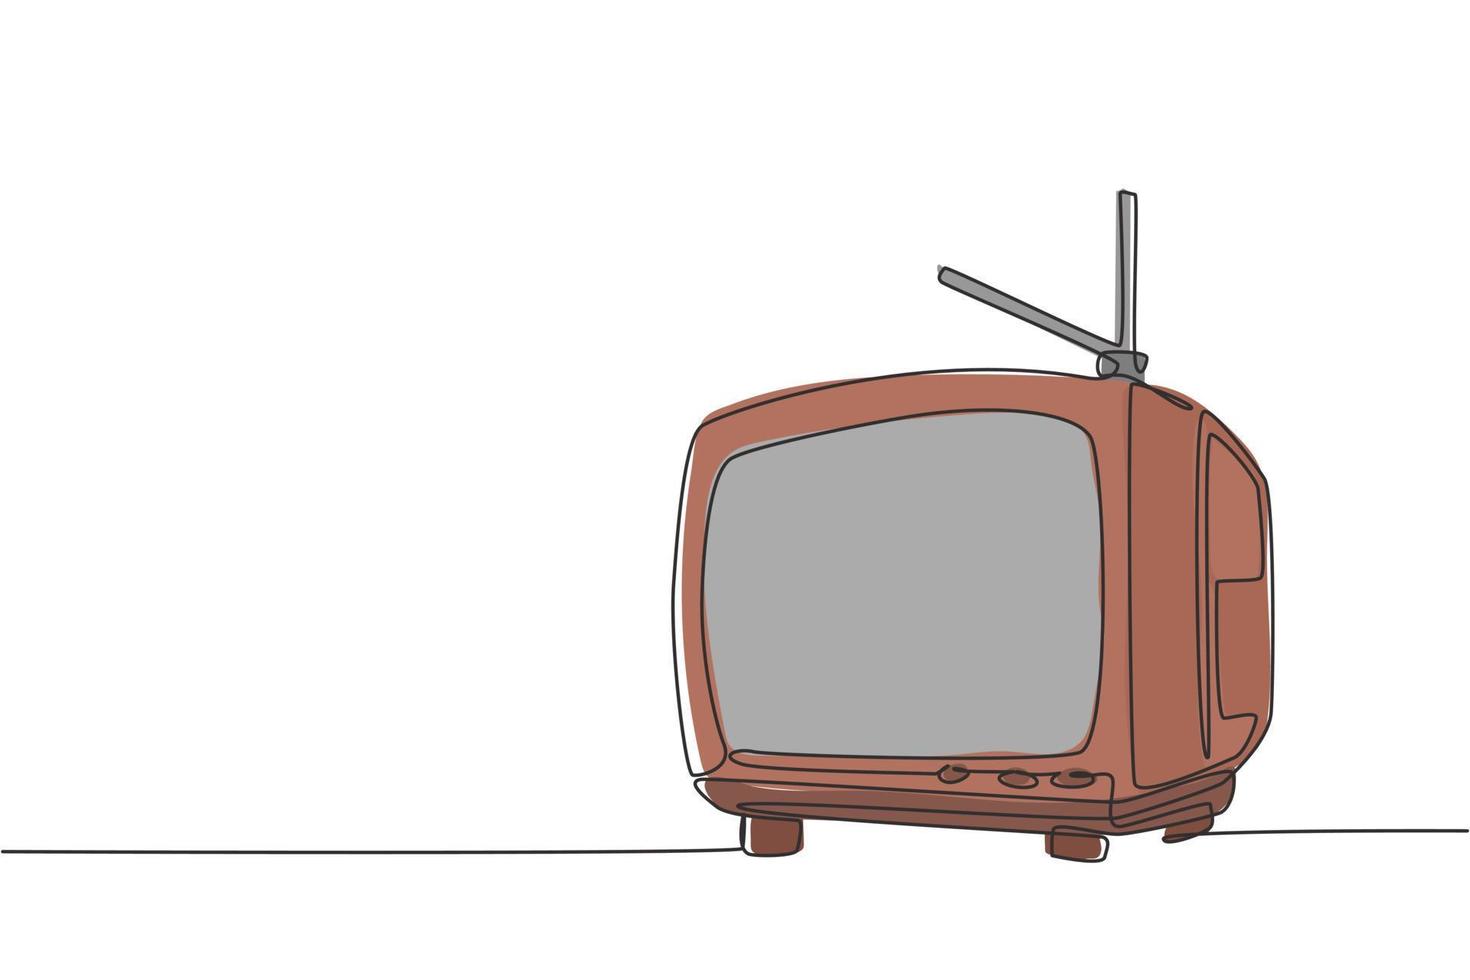 dibujo de línea continua única de tv antigua retro con antena interna. Ilustración de vector de diseño de dibujo gráfico de una línea de concepto de televisión analógica vintage clásico